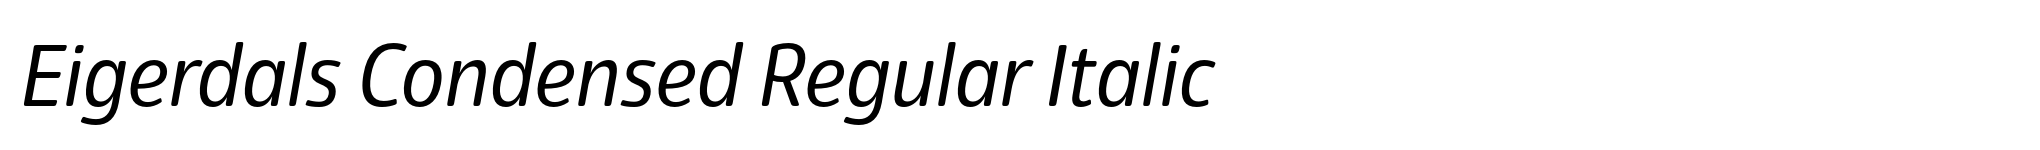 Eigerdals Condensed Regular Italic image